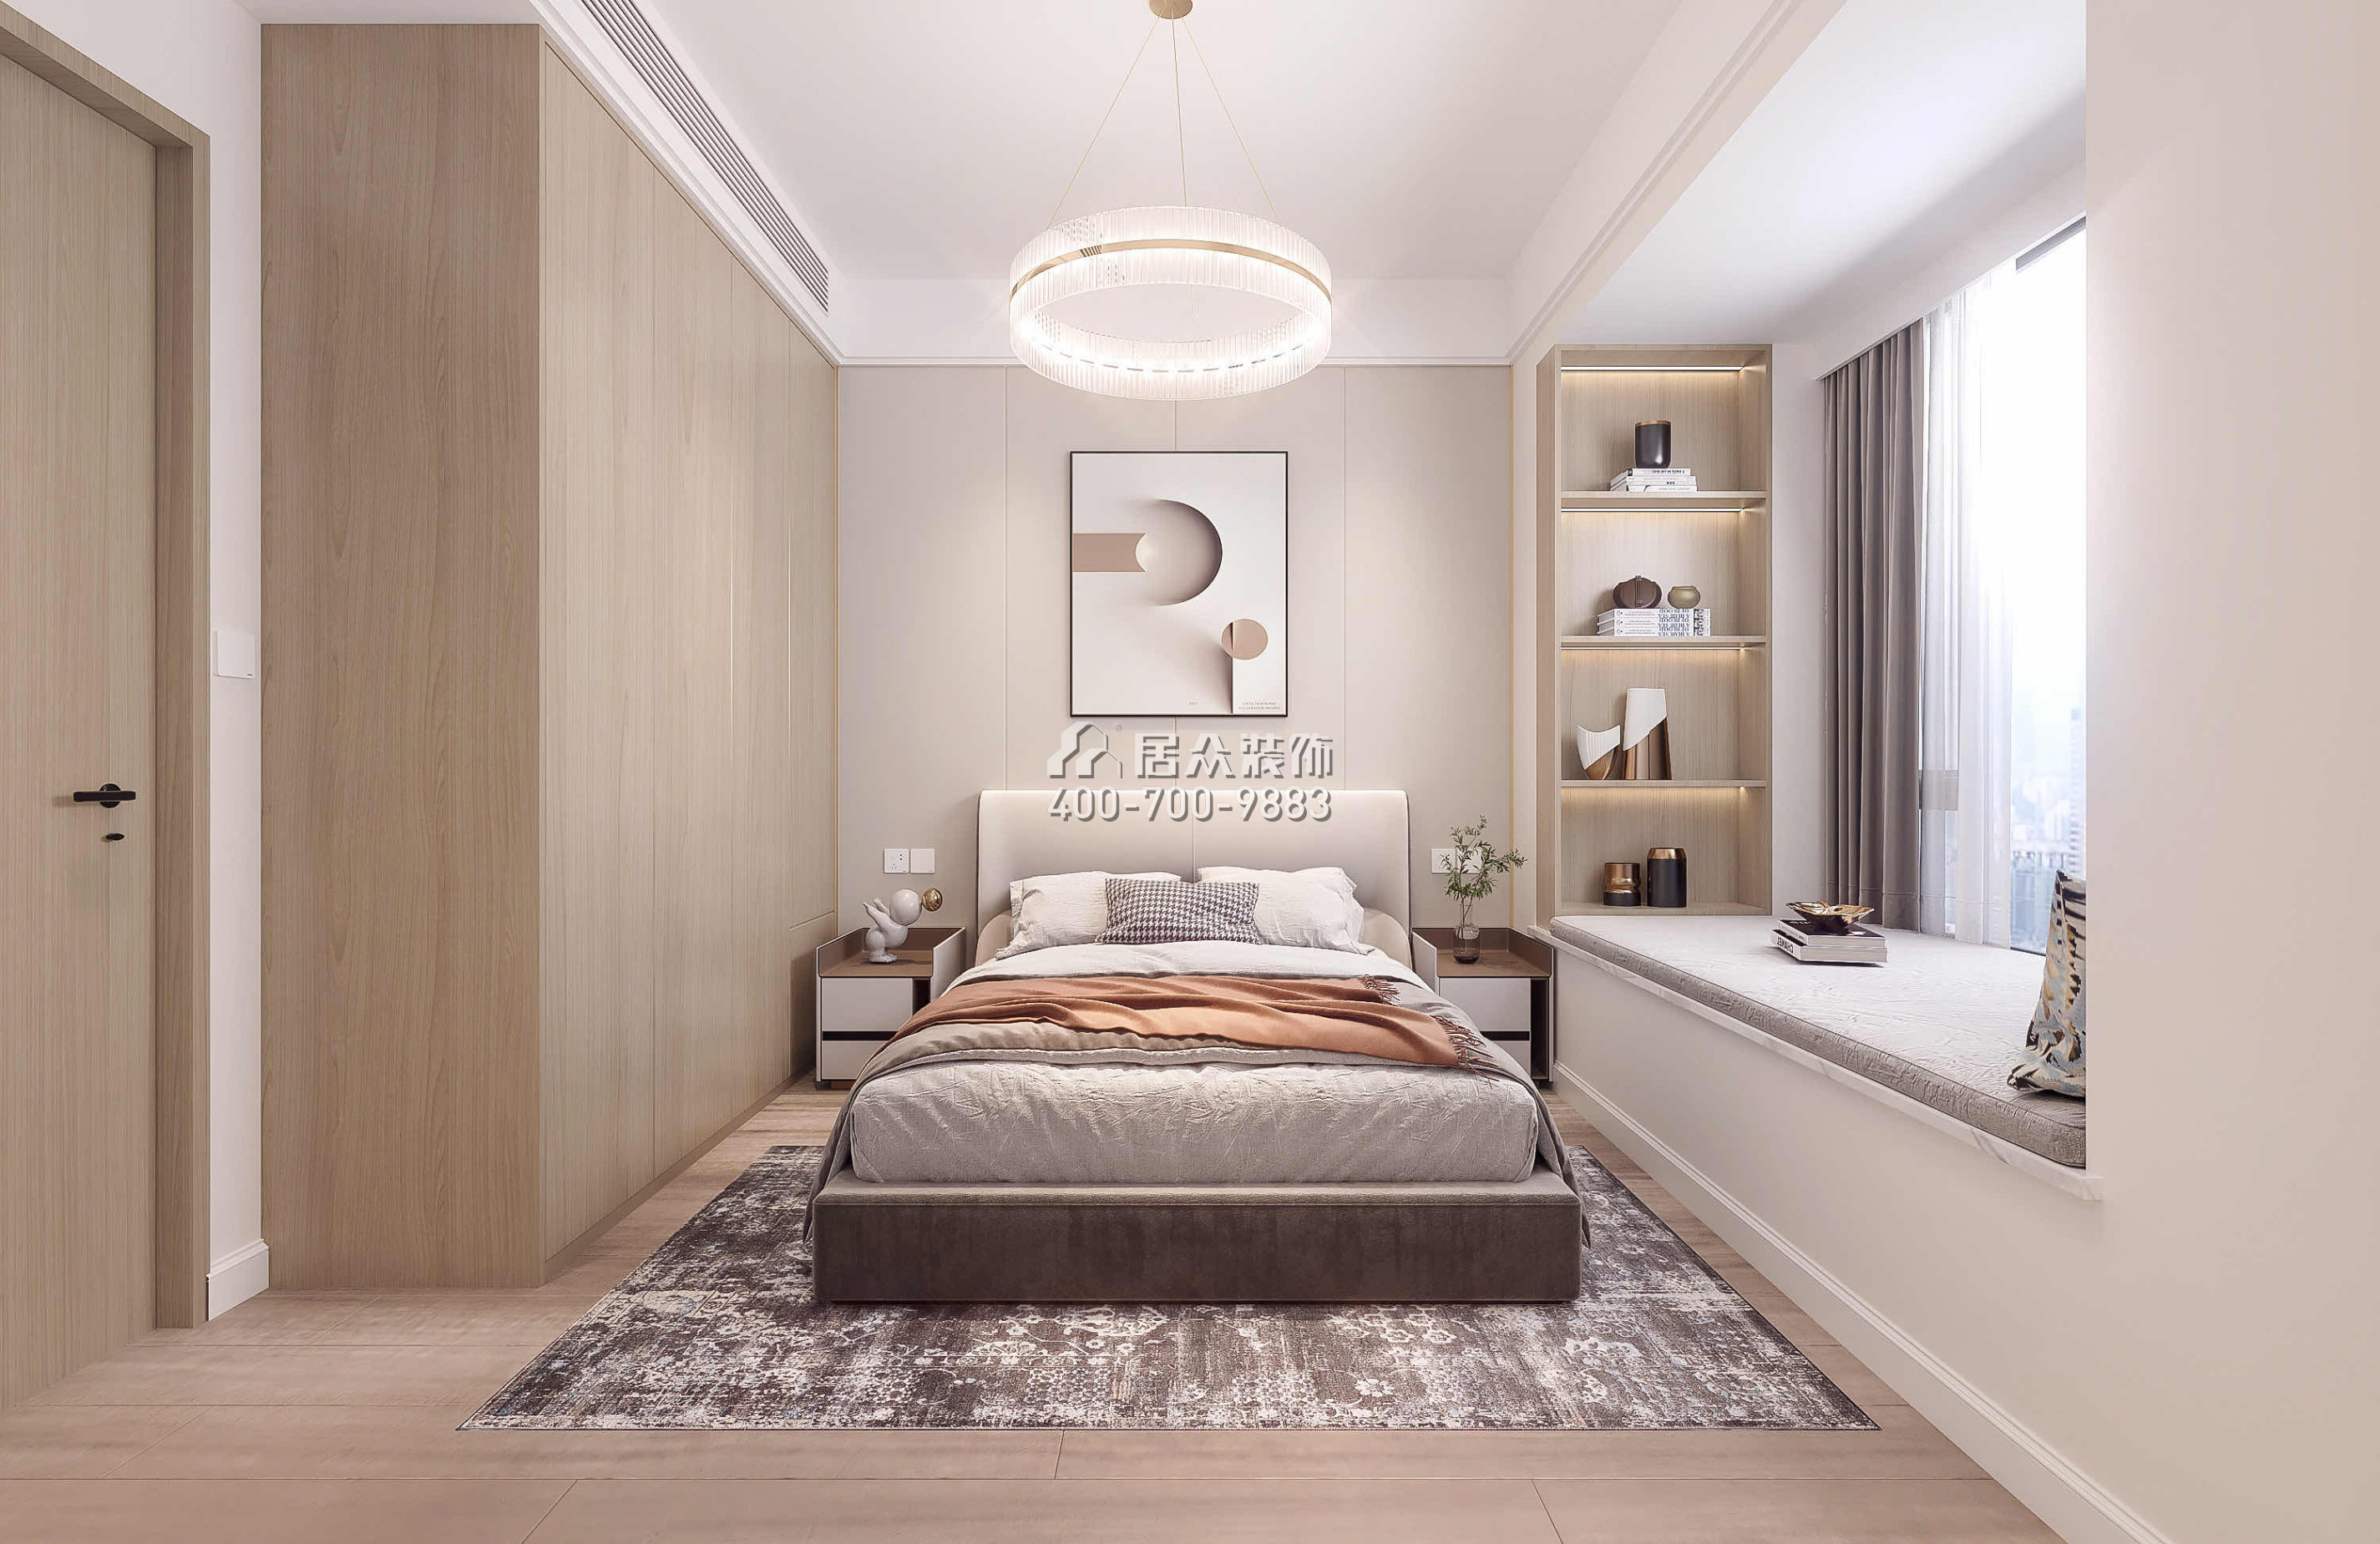 中洲濱海華府79平方米現代簡約風格平層戶型臥室裝修效果圖